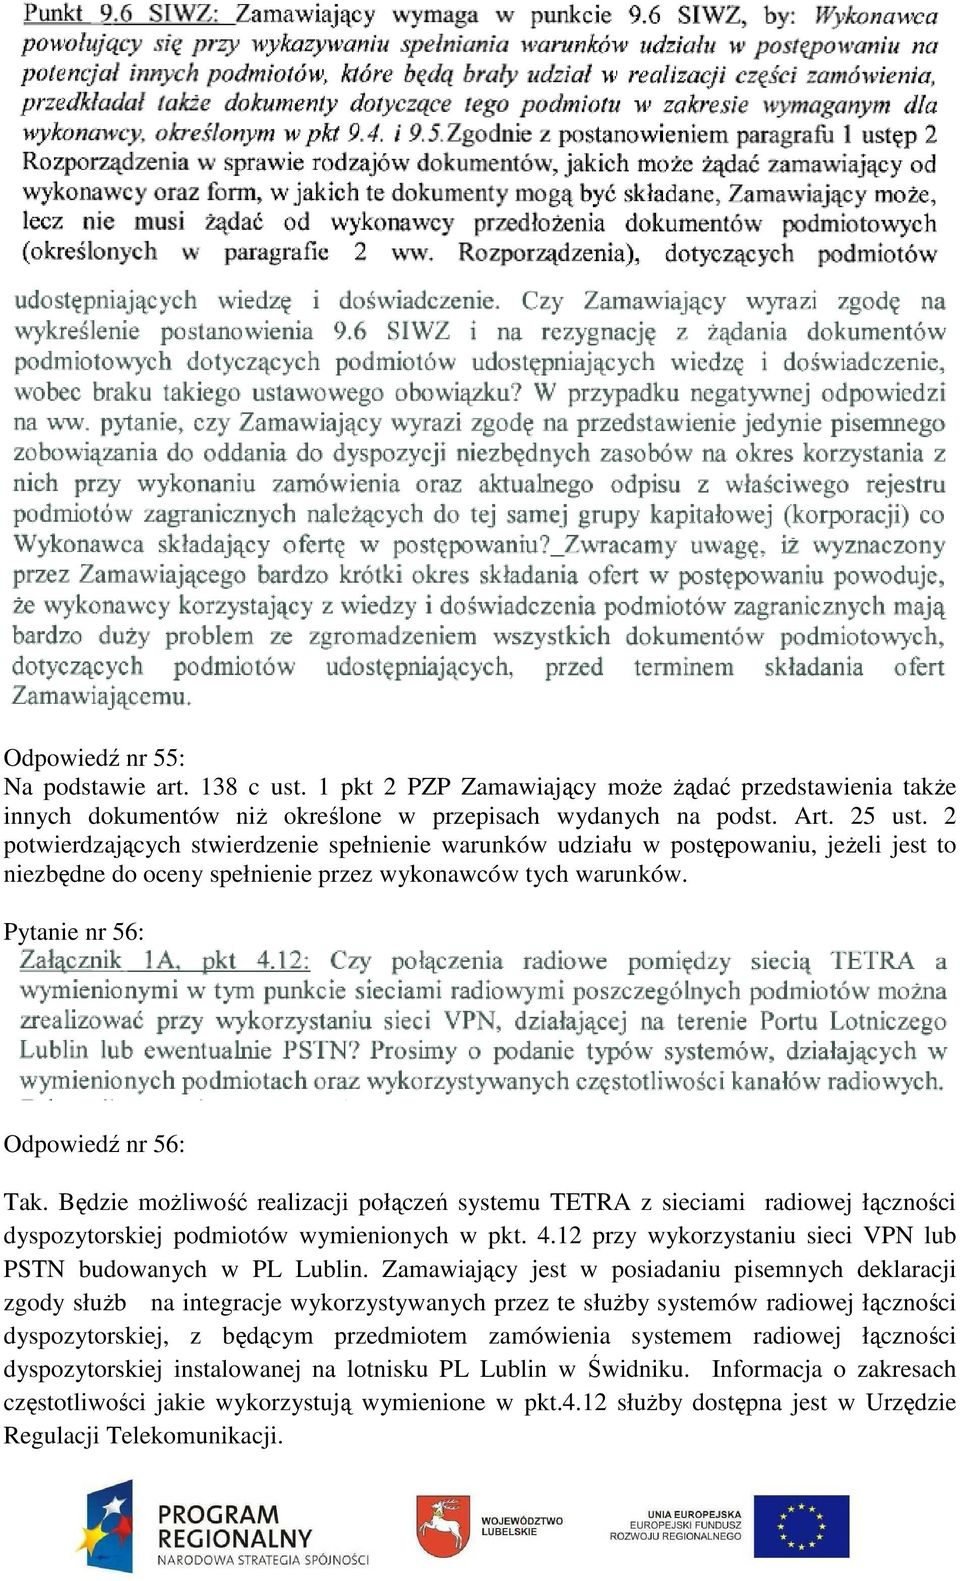 Będzie możliwość realizacji połączeń systemu TETRA z sieciami radiowej łączności dyspozytorskiej podmiotów wymienionych w pkt. 4.12 przy wykorzystaniu sieci VPN lub PSTN budowanych w PL Lublin.